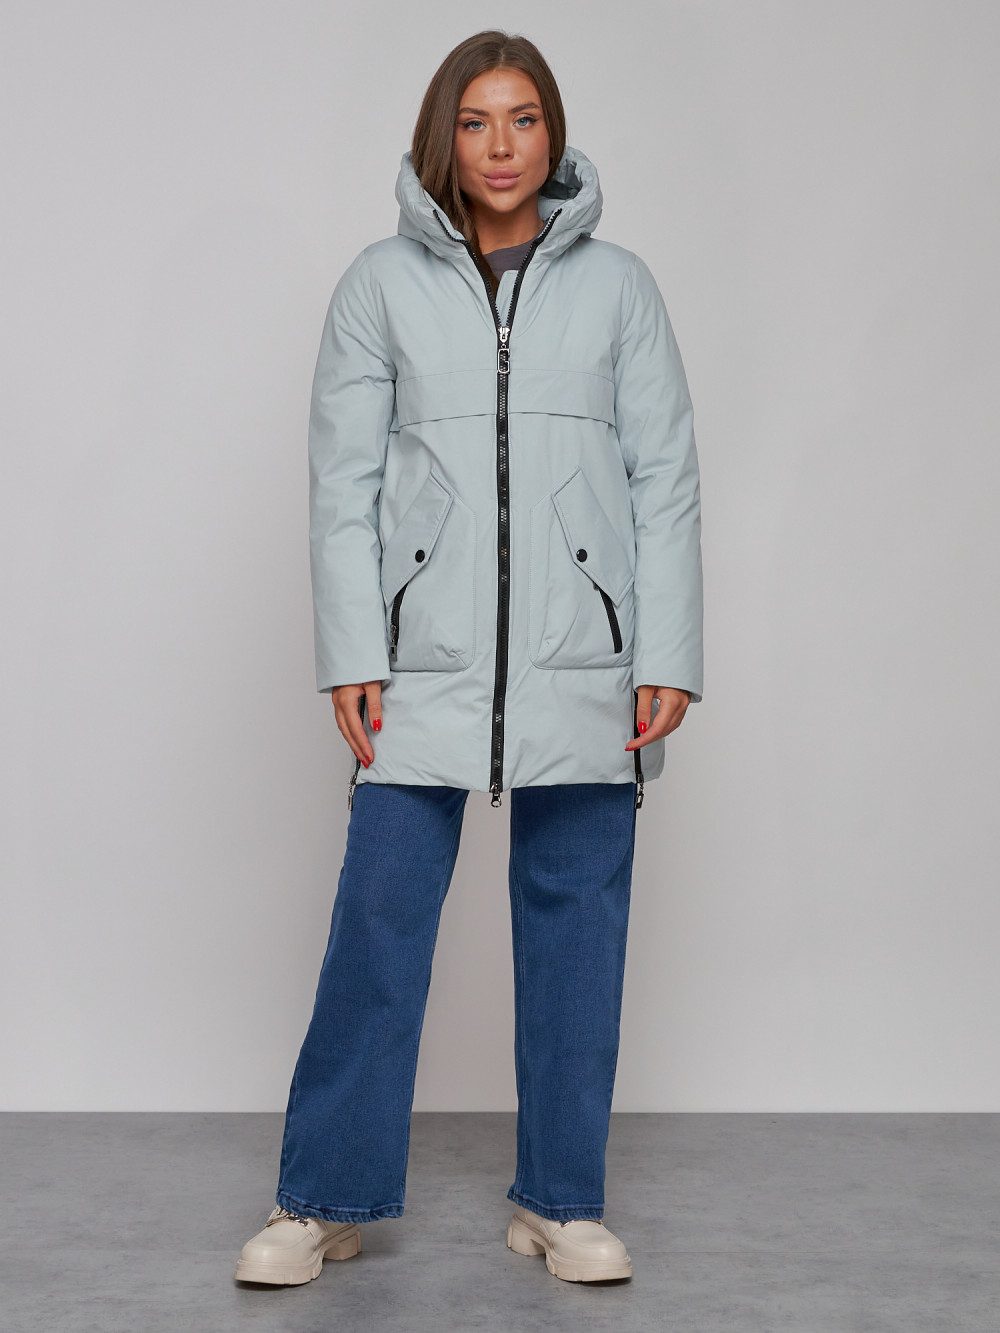 Купить оптом Зимняя женская куртка молодежная с капюшоном бирюзового цвета 58622Br в Казани